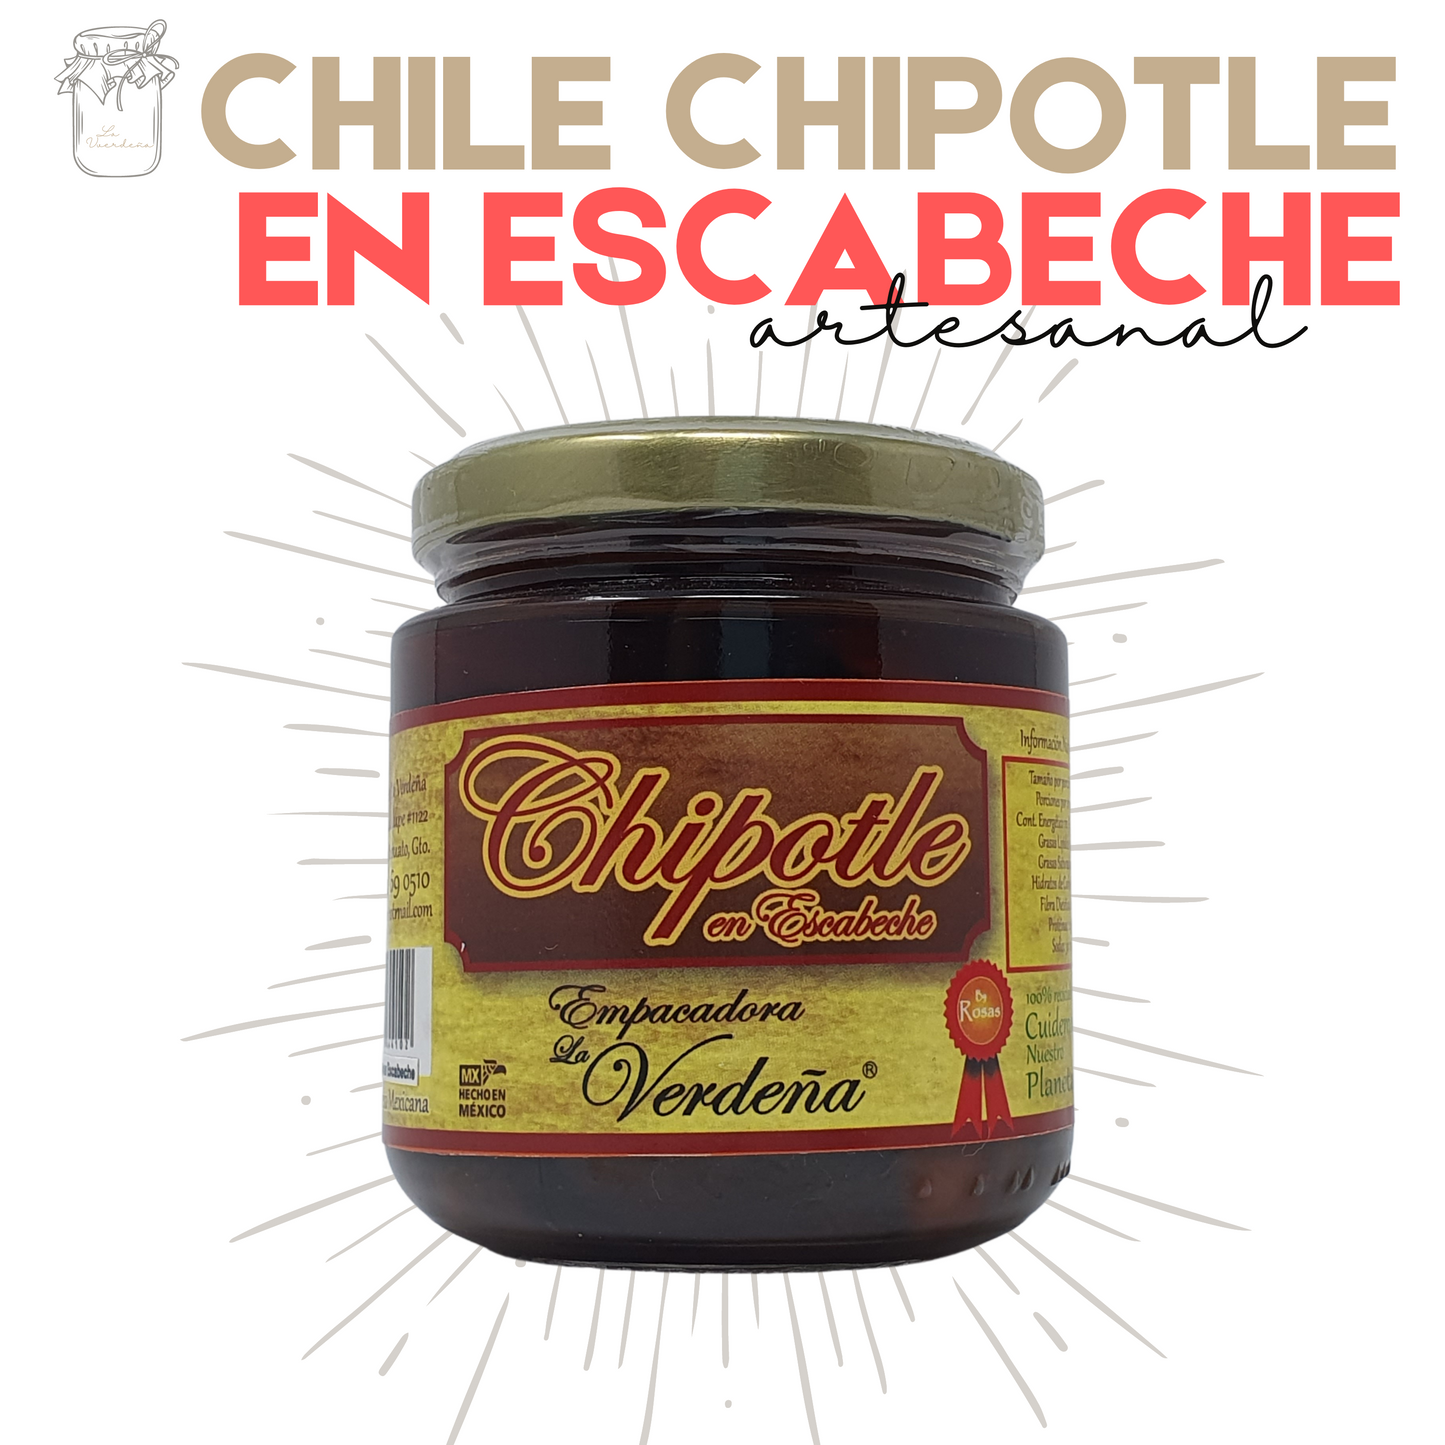 Chipotle en Escabeche | Chile Chipotle | Gourmet | Artesanal | Mexpofood